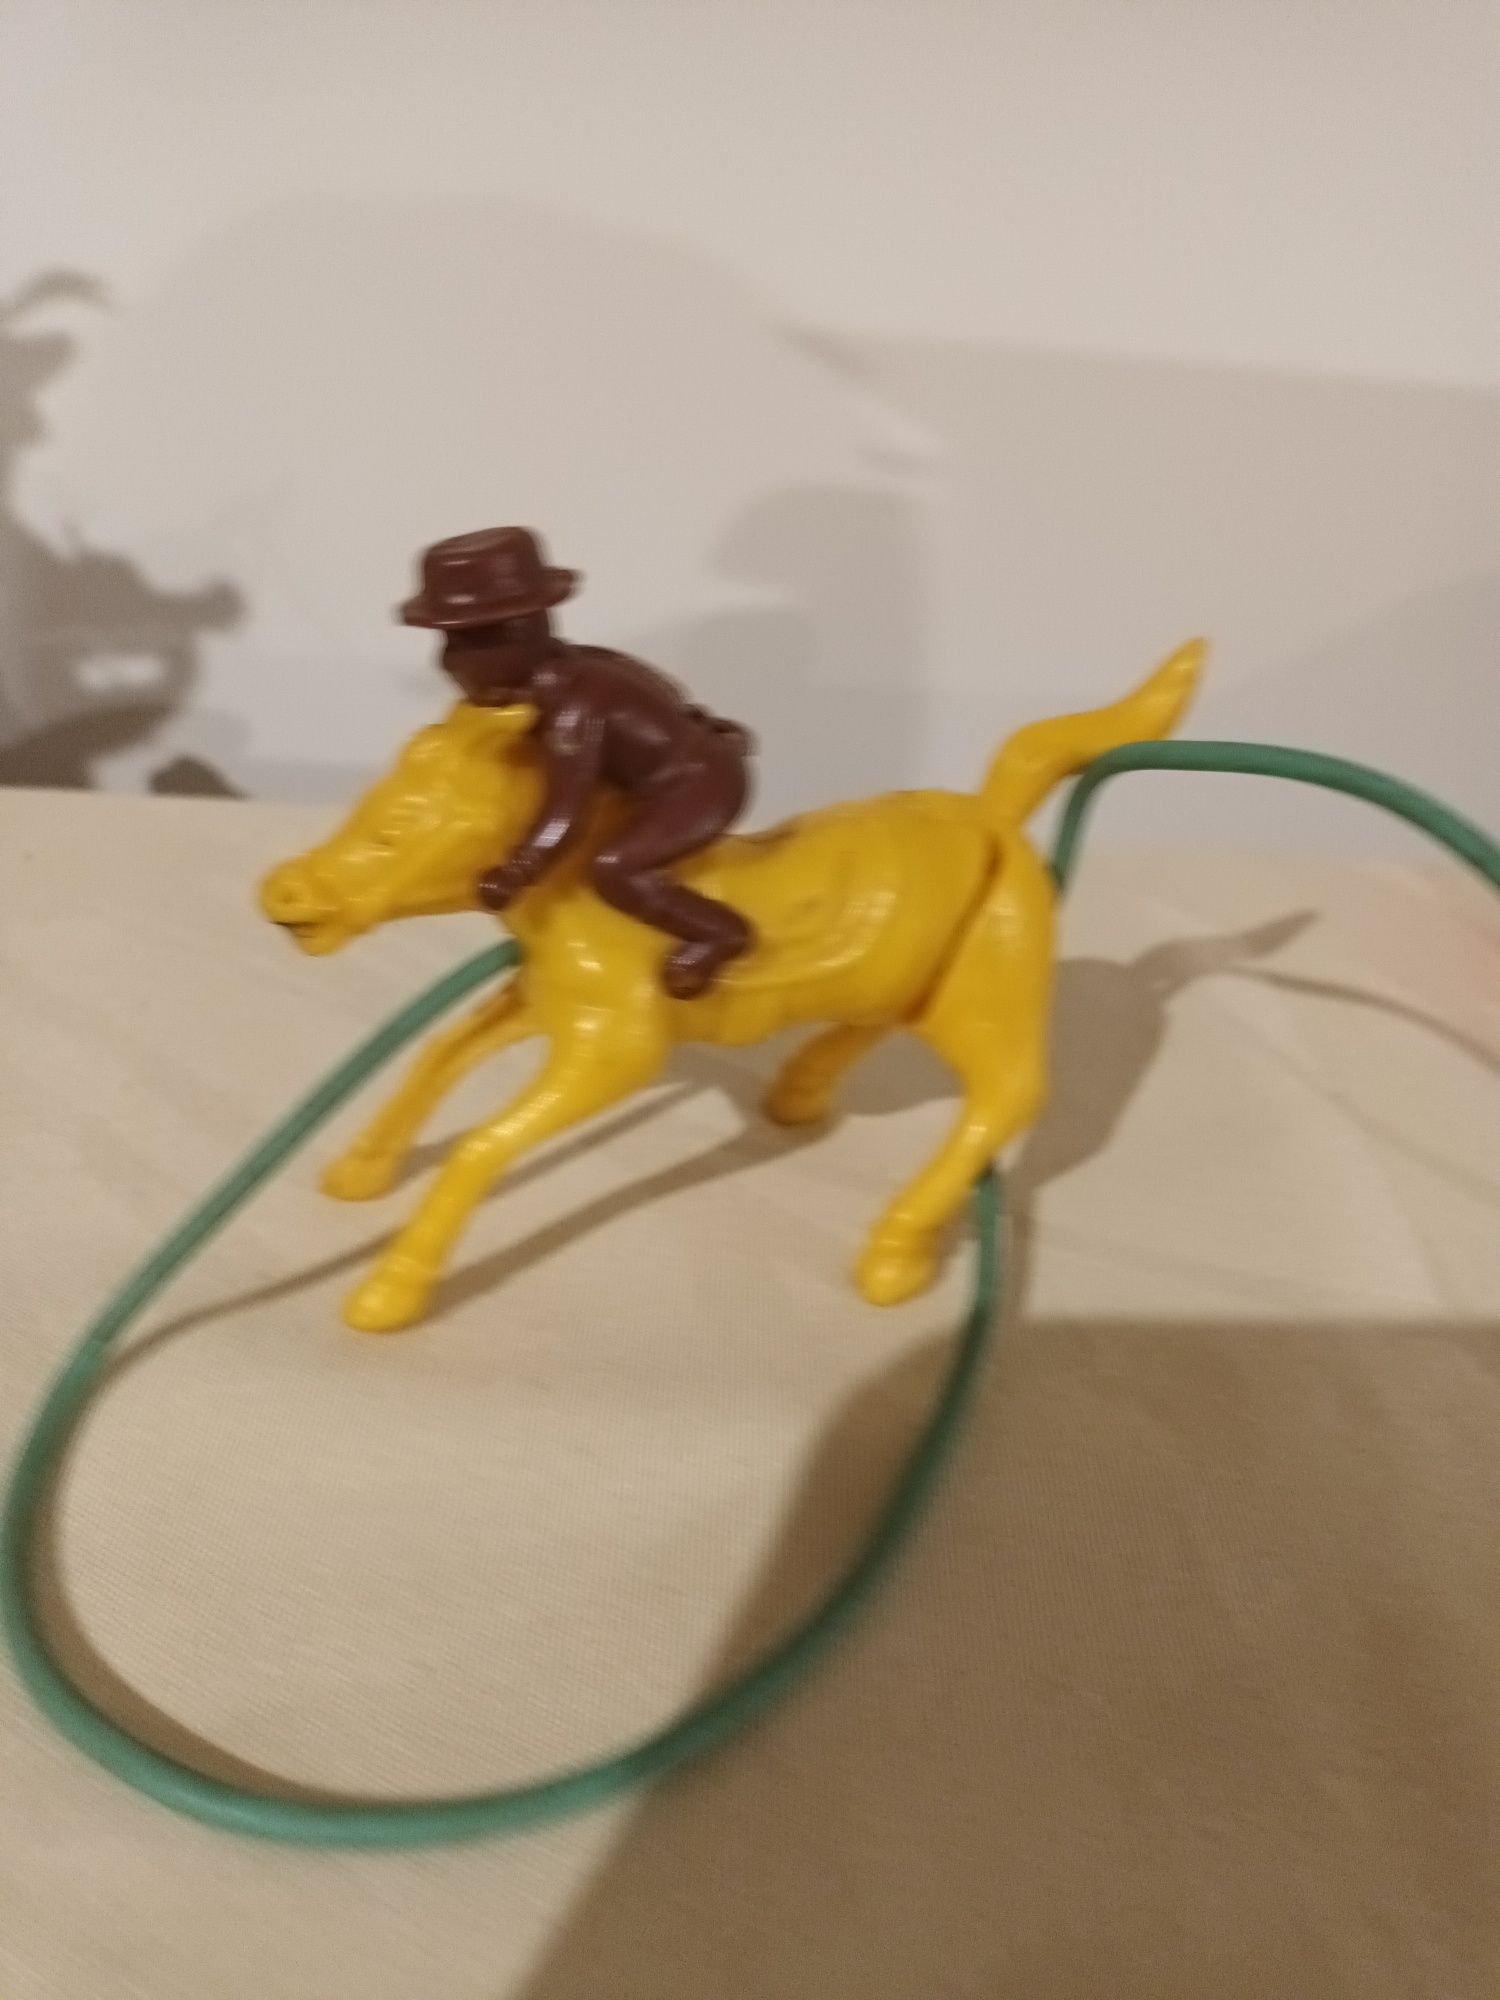 Cavalo De Pressão De Ar,Brinquedo Pequeno De Plástico , Find Complete